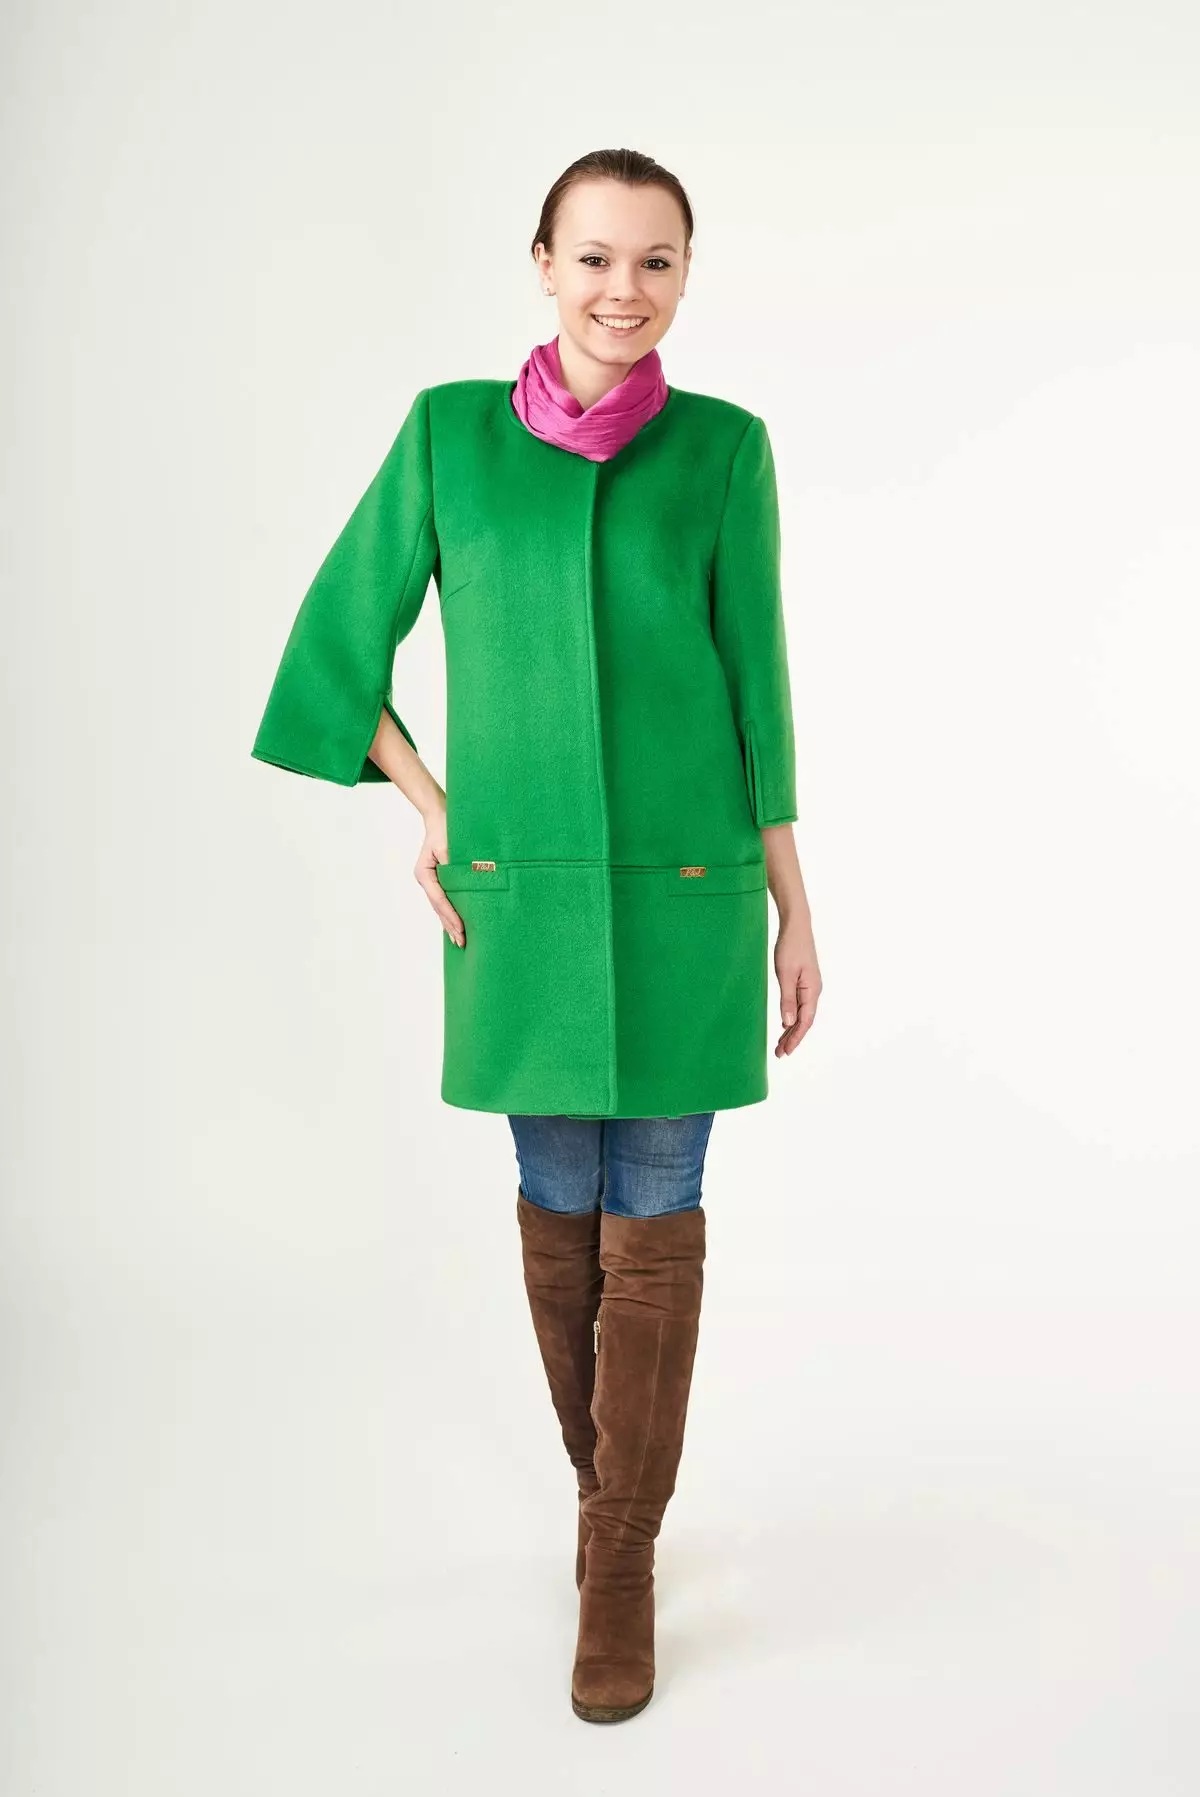 Qué llevar un abrigo verde (122 fotos): verde oscuro, qué bufanda se ajustará, bolsa, accesorios, abrigo con un collar de inglés 601_117